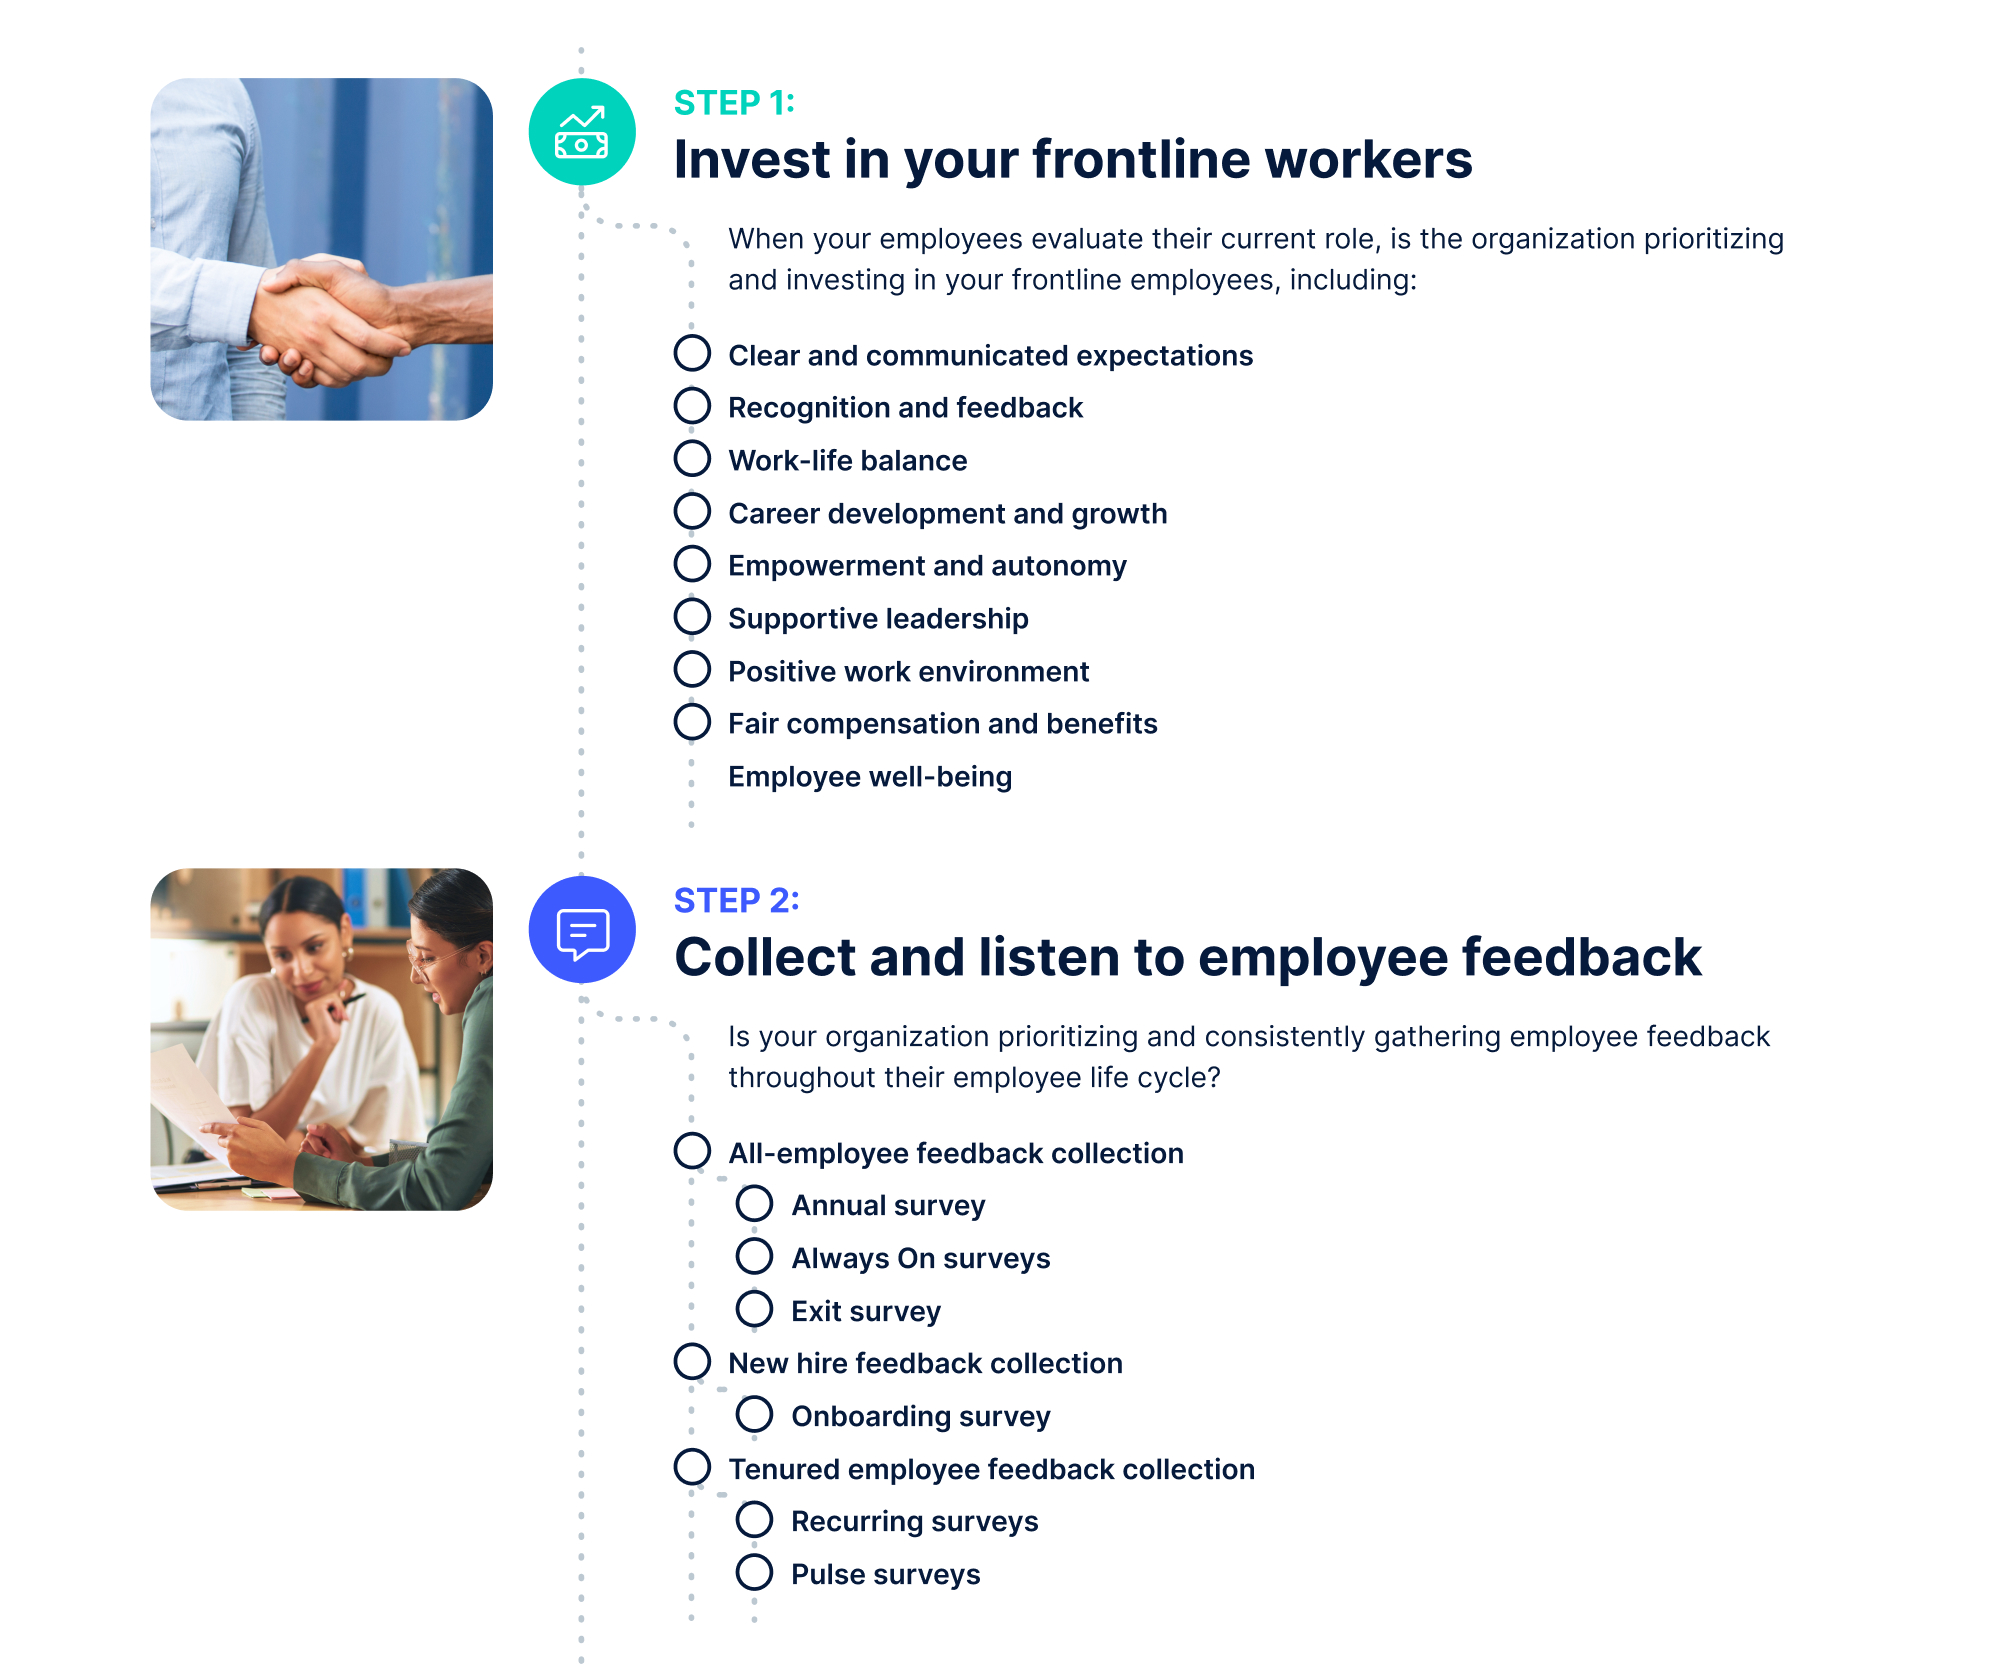 WorkStep Frontline Employee Checklist designs